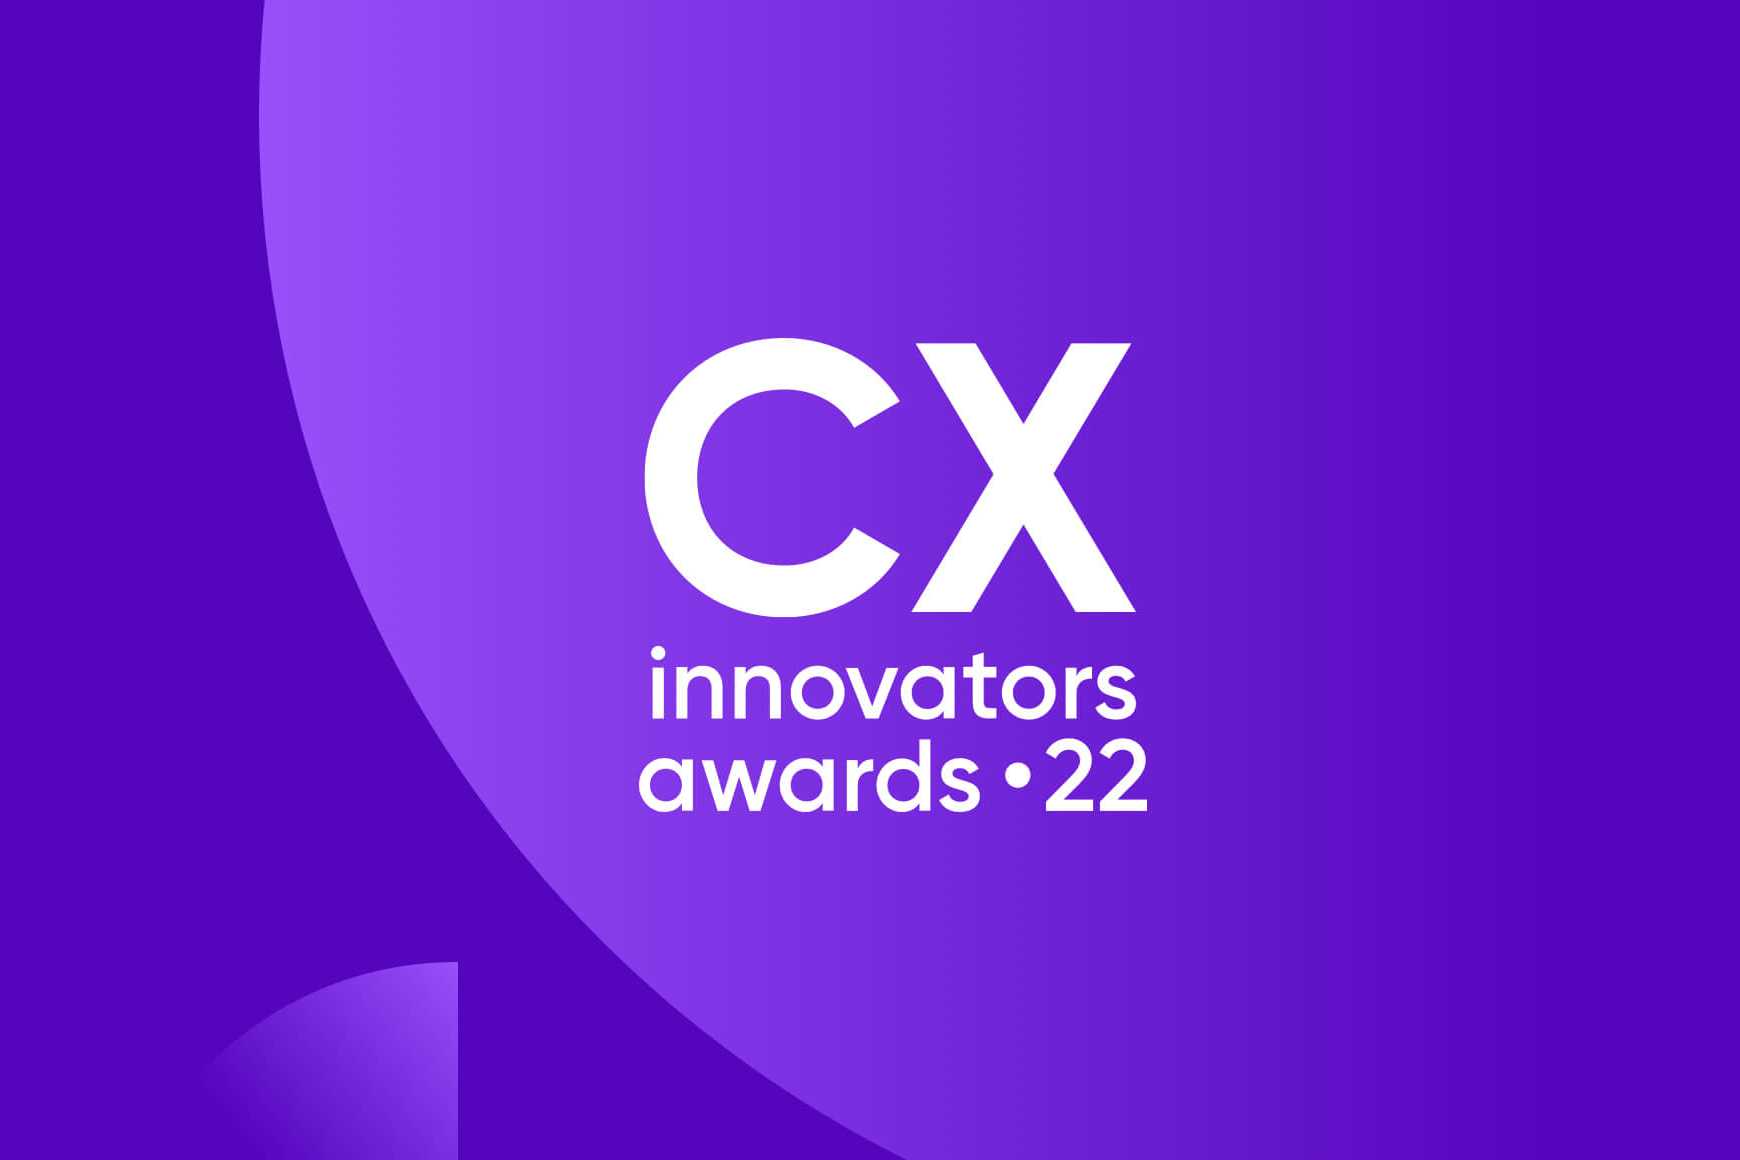 Saiba como os inovadores da CX estão a encontrar uma maneira melhor de colocar os clientes em primeiro lugar.